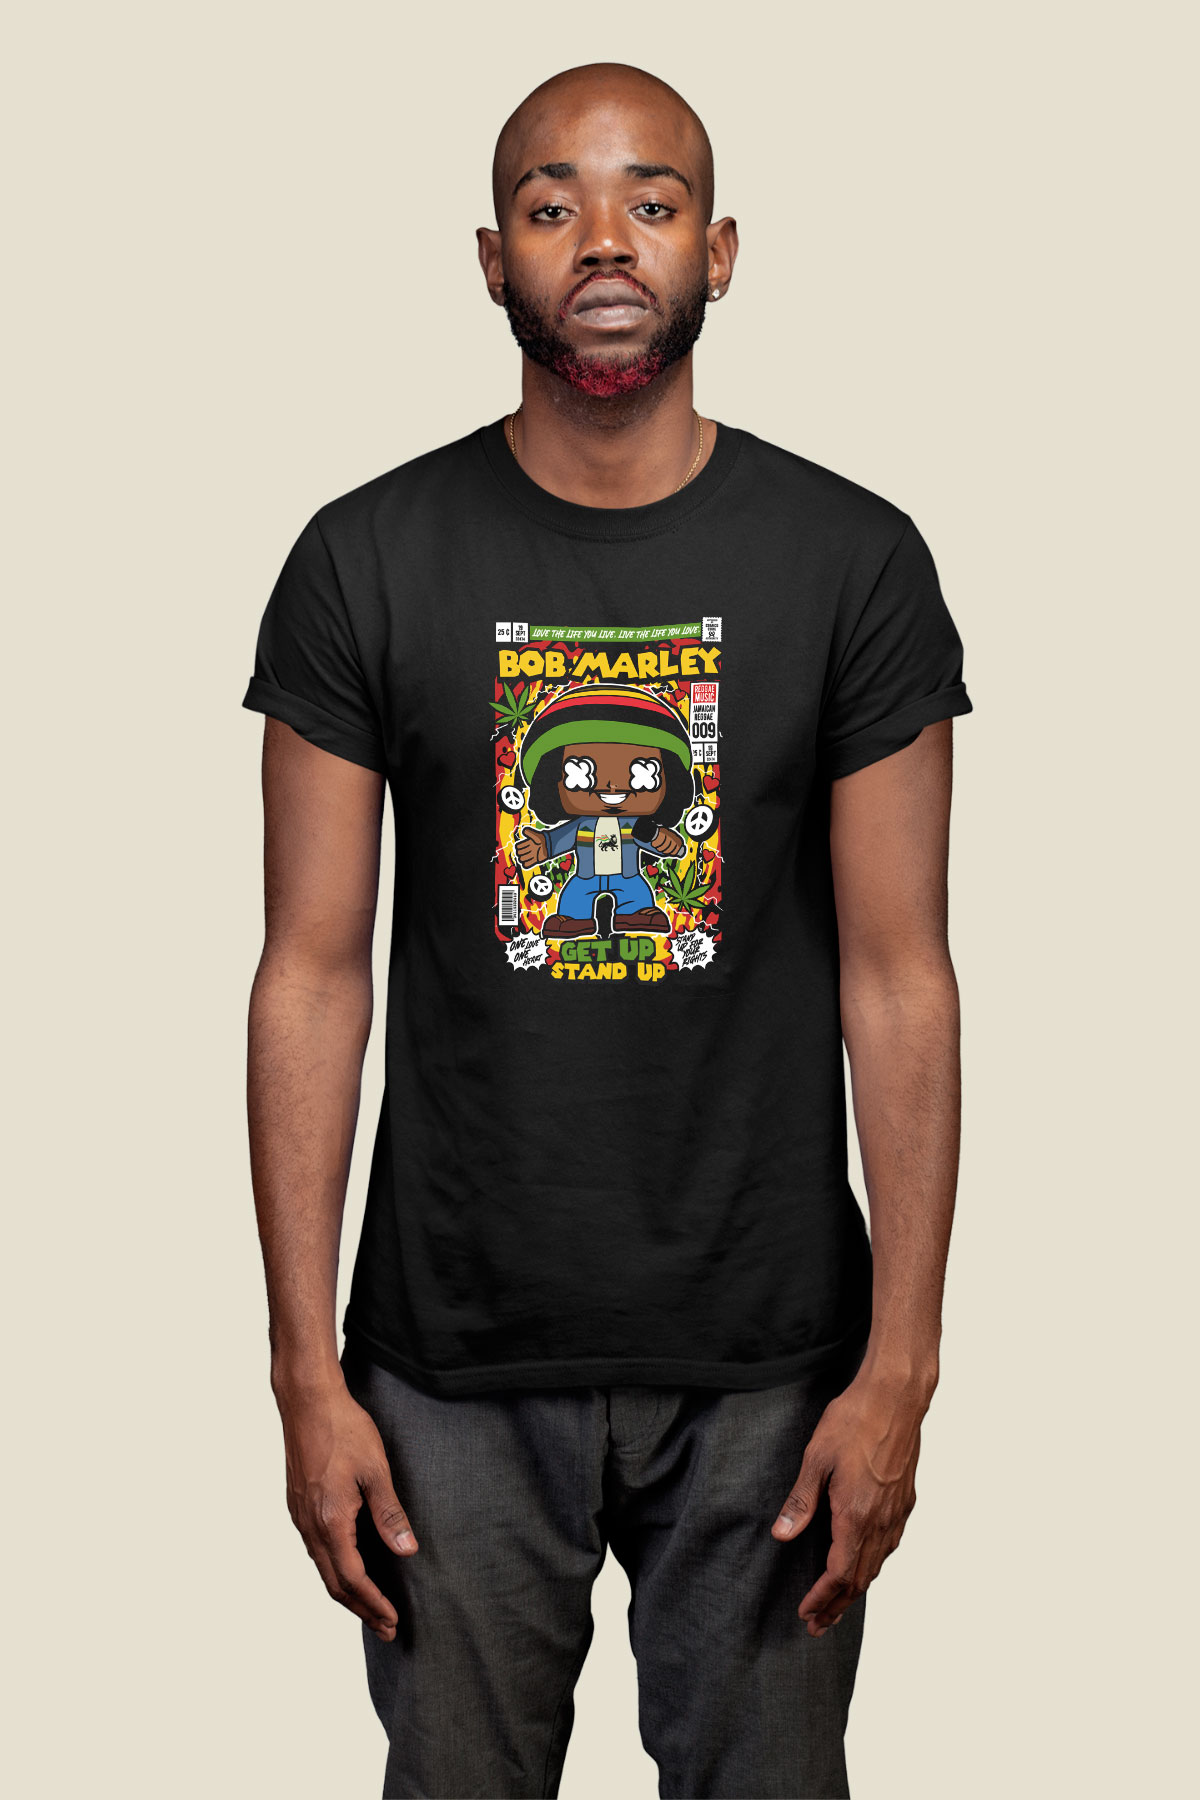 Bob Marley İsimli Baskılı Siyah Tişört - Maymuun.com'da